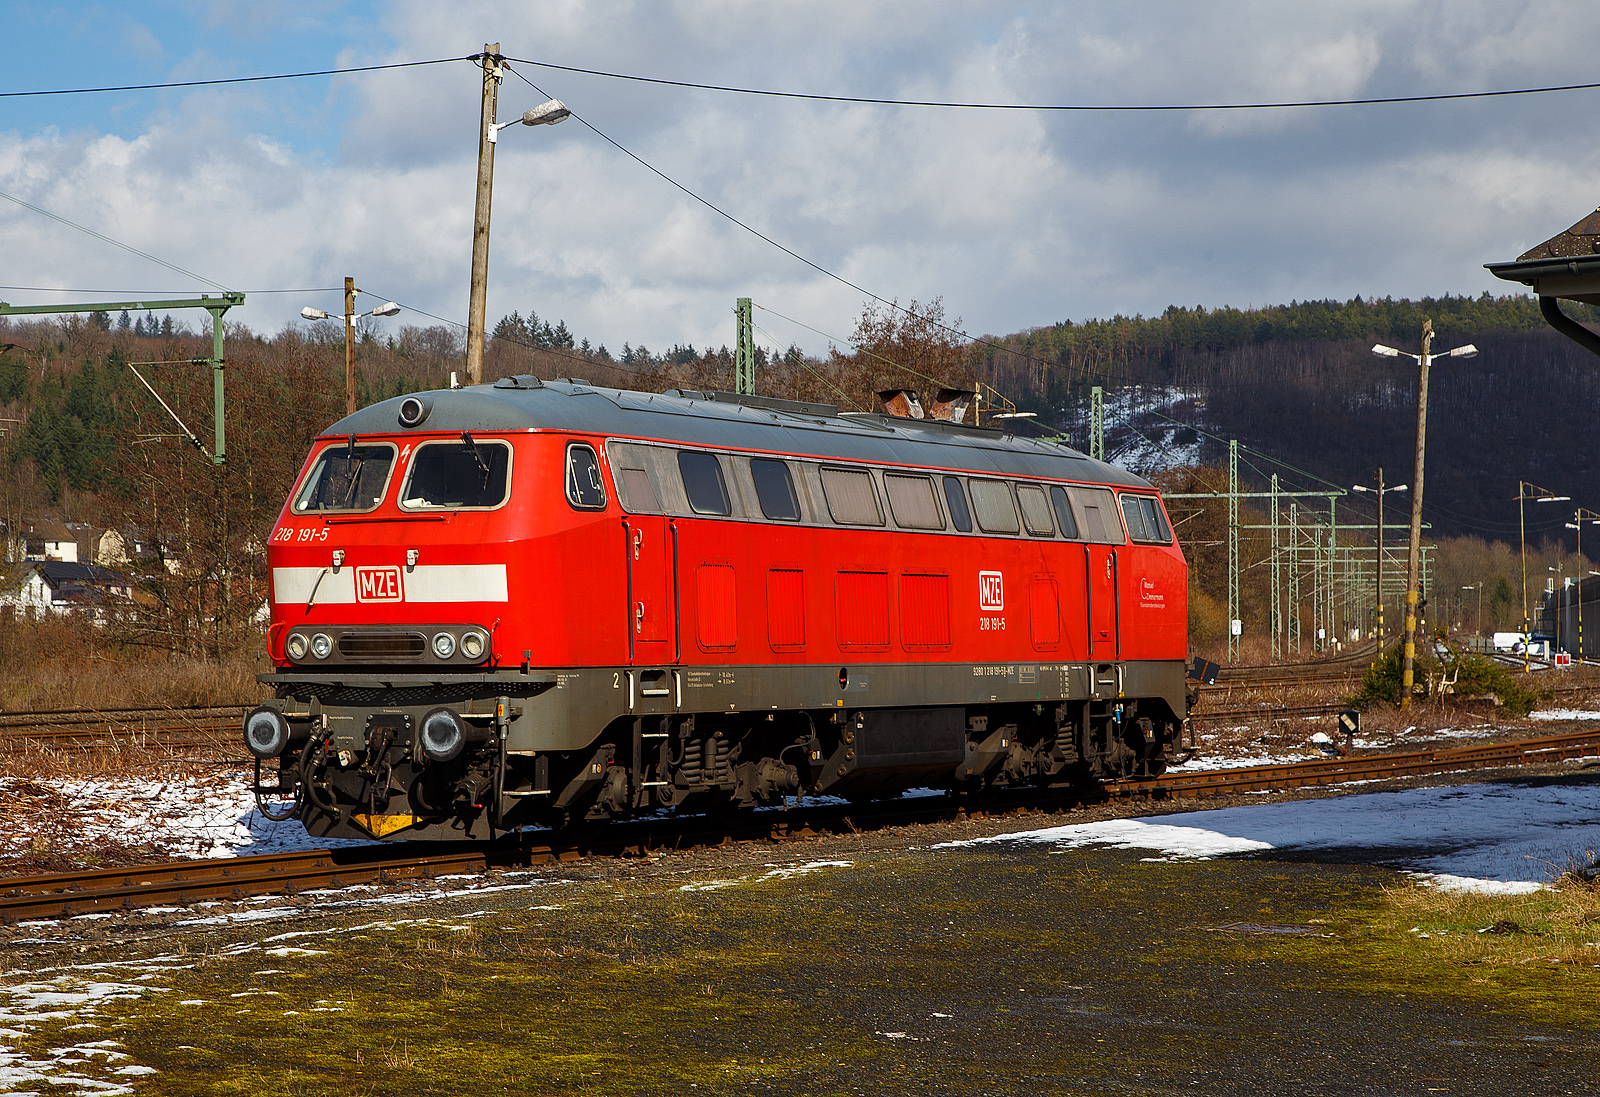 Die 218 191-5 (92 80 1218 191-5 D-MZE) der MZE - Manuel Zimmermann Eisenbahndienstleistungen ist am 15.03.2023 beim Kleinbahnhof der WEBA (Westerwaldbahn) abgestellt.

Die V 164 (BR 218) wurde 1973 bei Krupp unter der Fabriknummer 5205 gebaut und an die DB geliefert, im Juli 2018 wurde sie dann ausgemustert und an Manuel Zimmermann Eisenbahndienstleistungen verkauft.